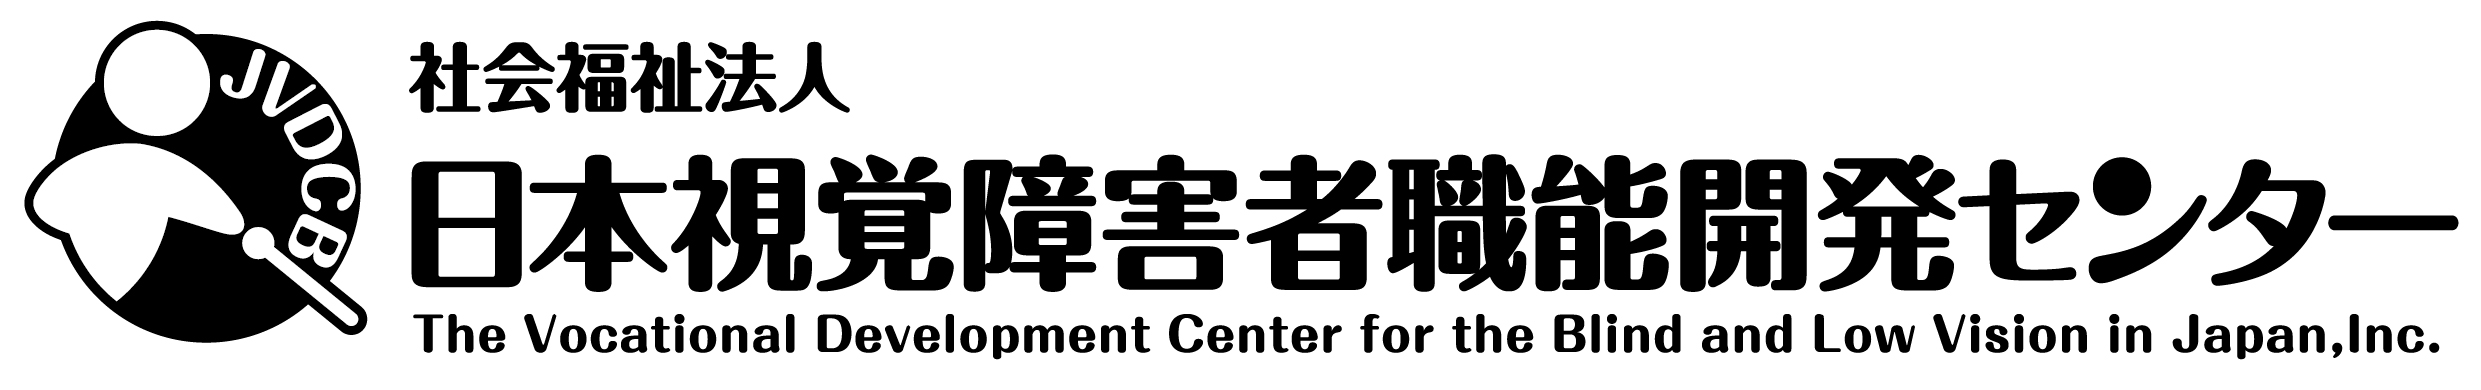 日本視覚障害者職能開発センター、PCを利用した事務職に挑戦する視覚障害者の支援を行っています。